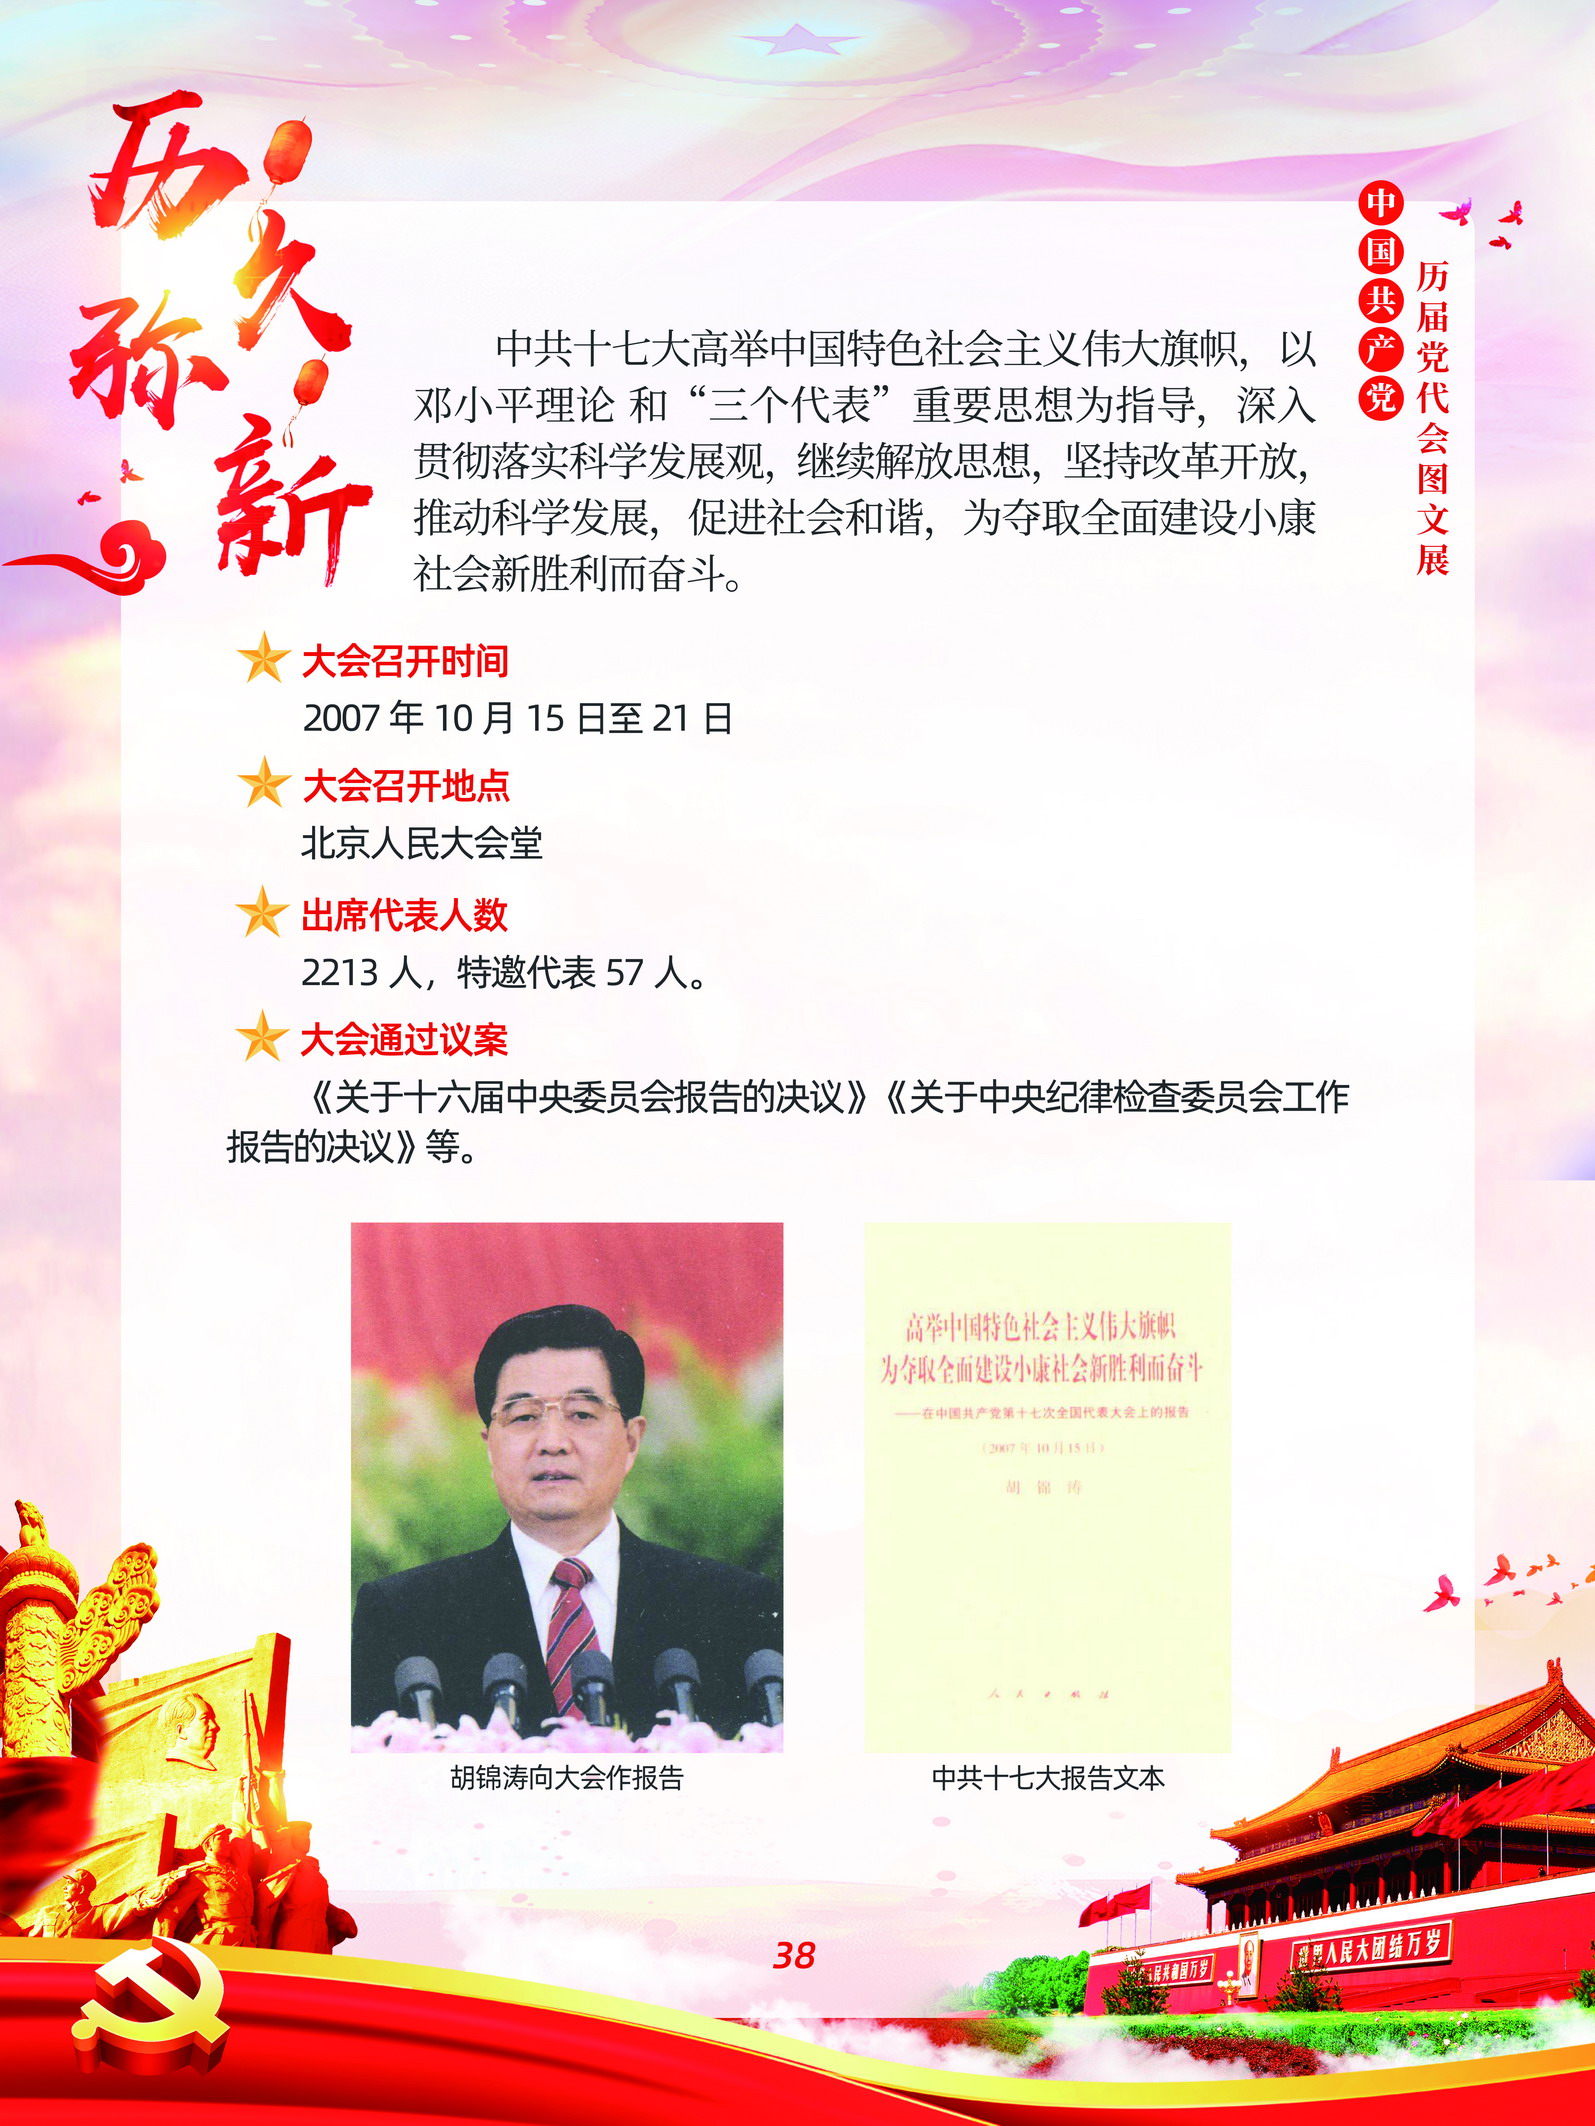 中国共产党历届党代会图文展_图37